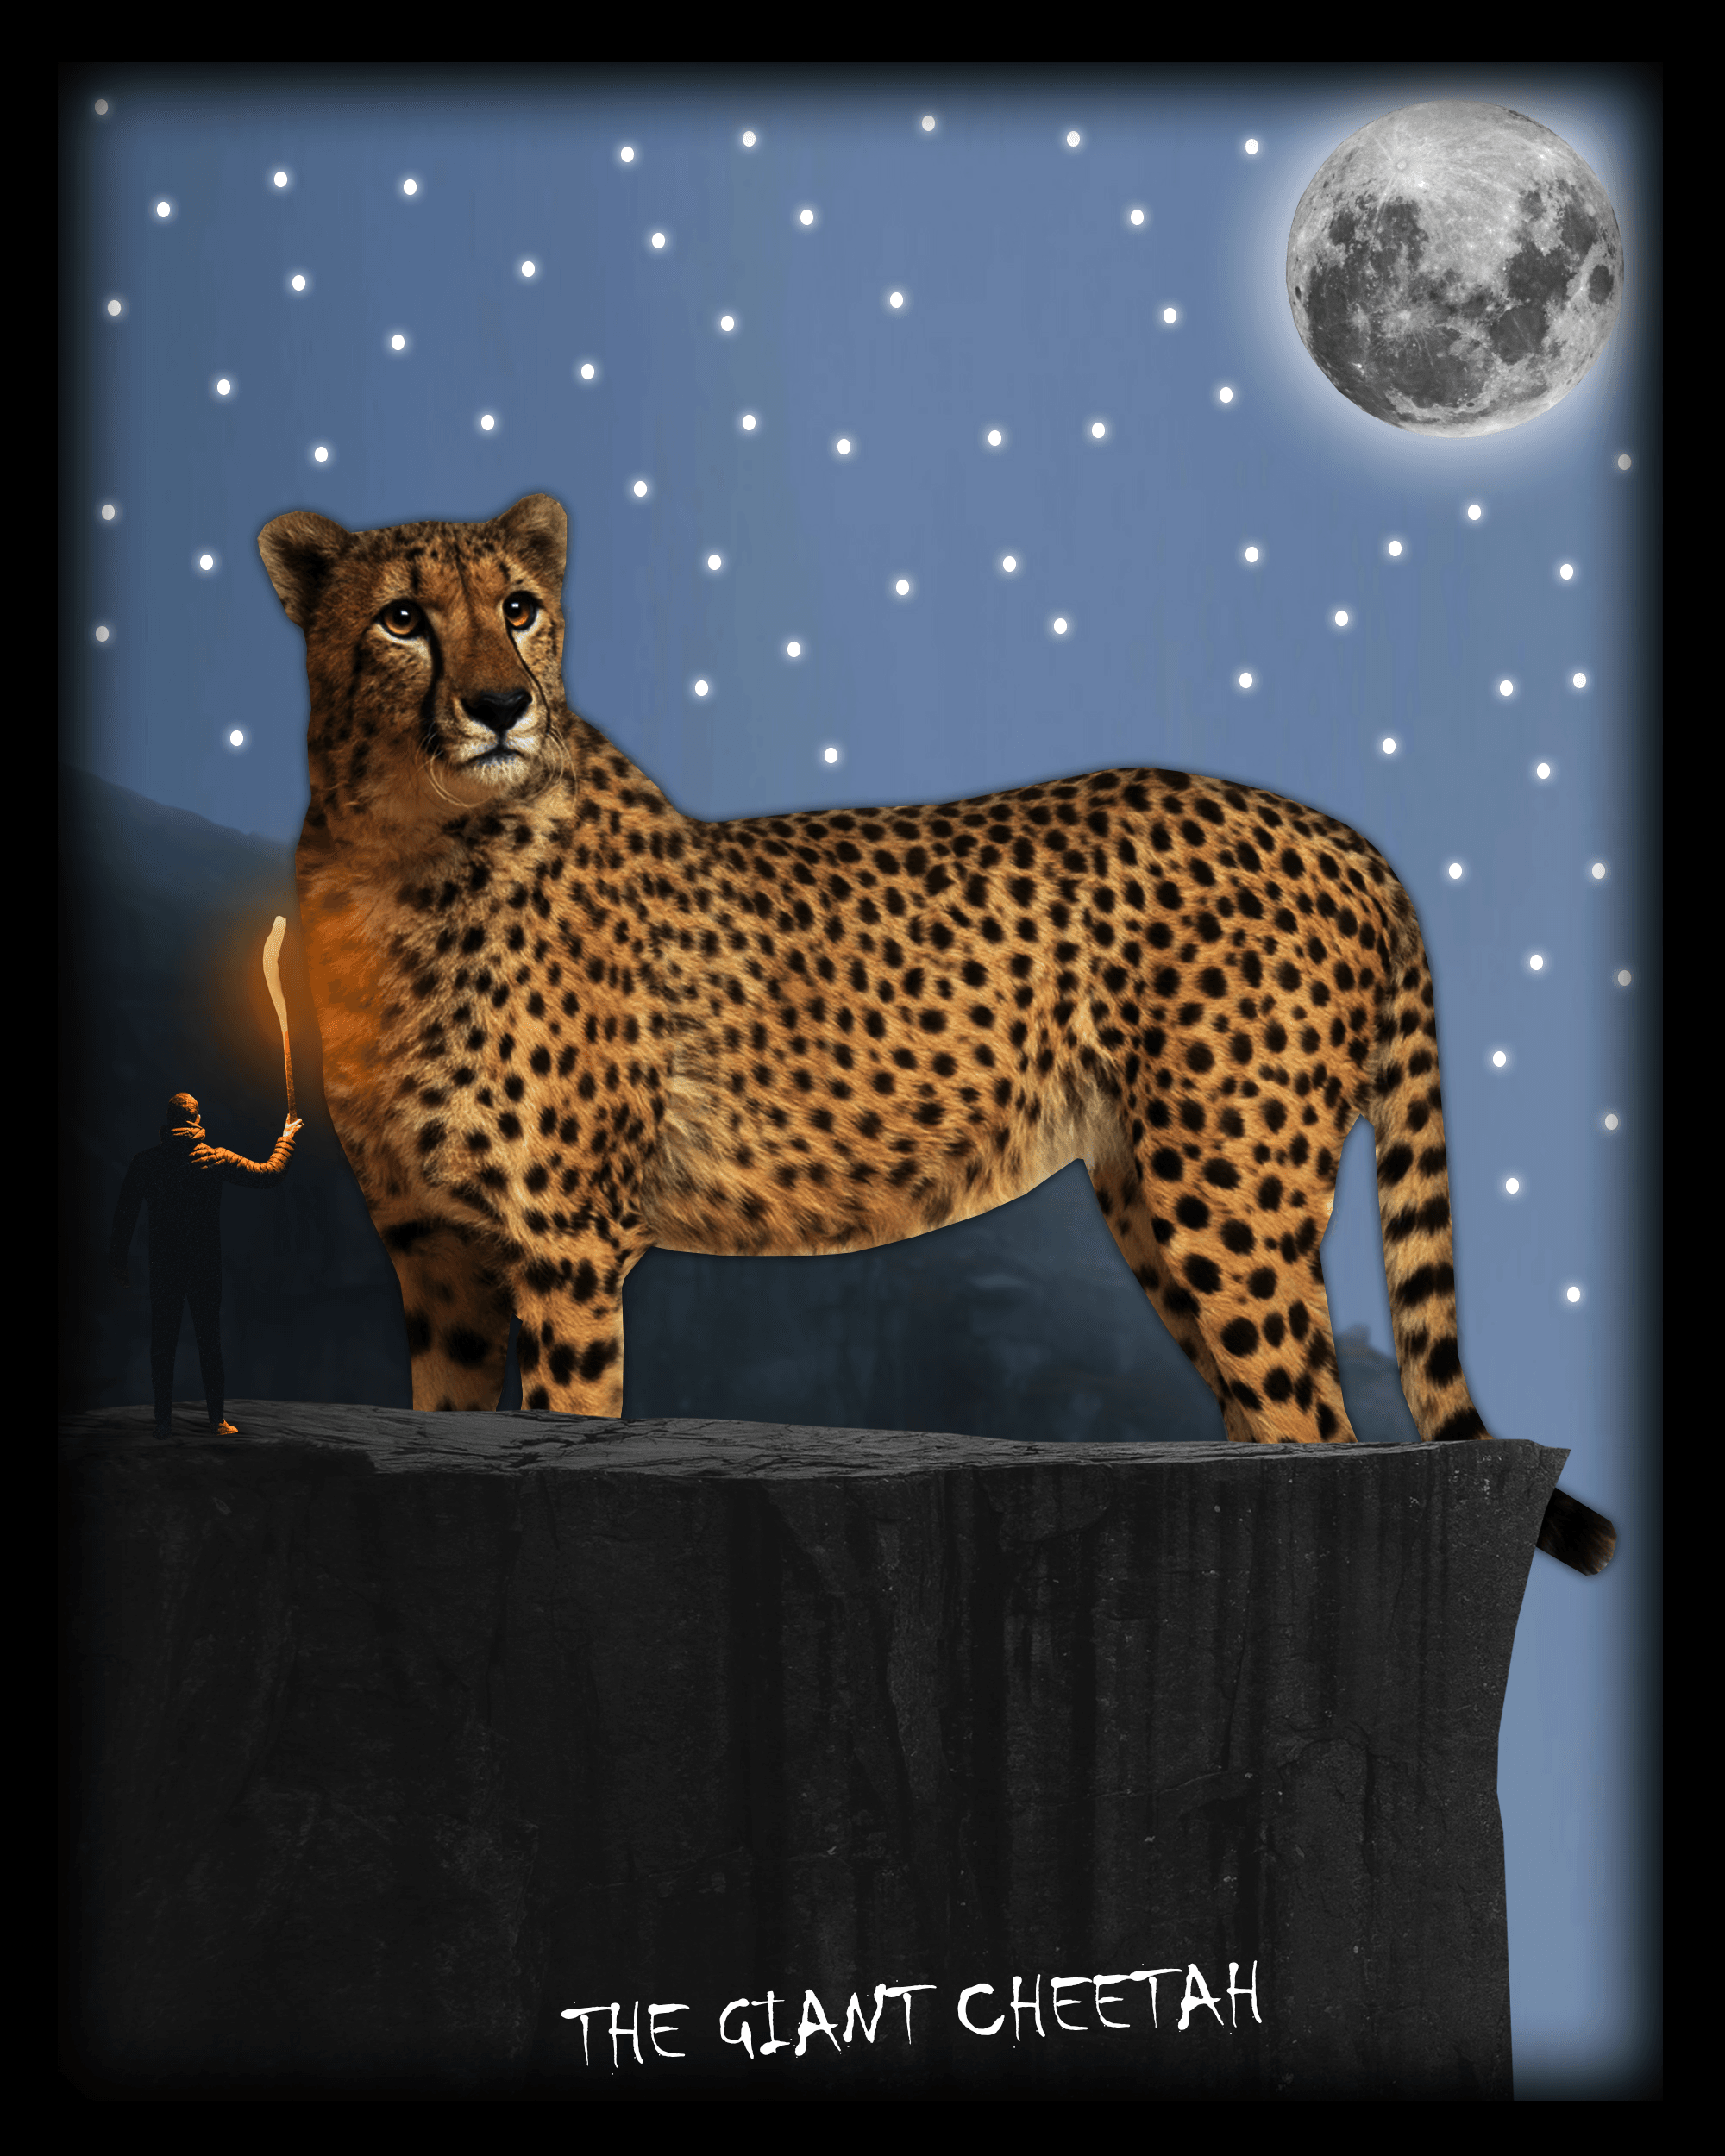 The Giant Cheetah